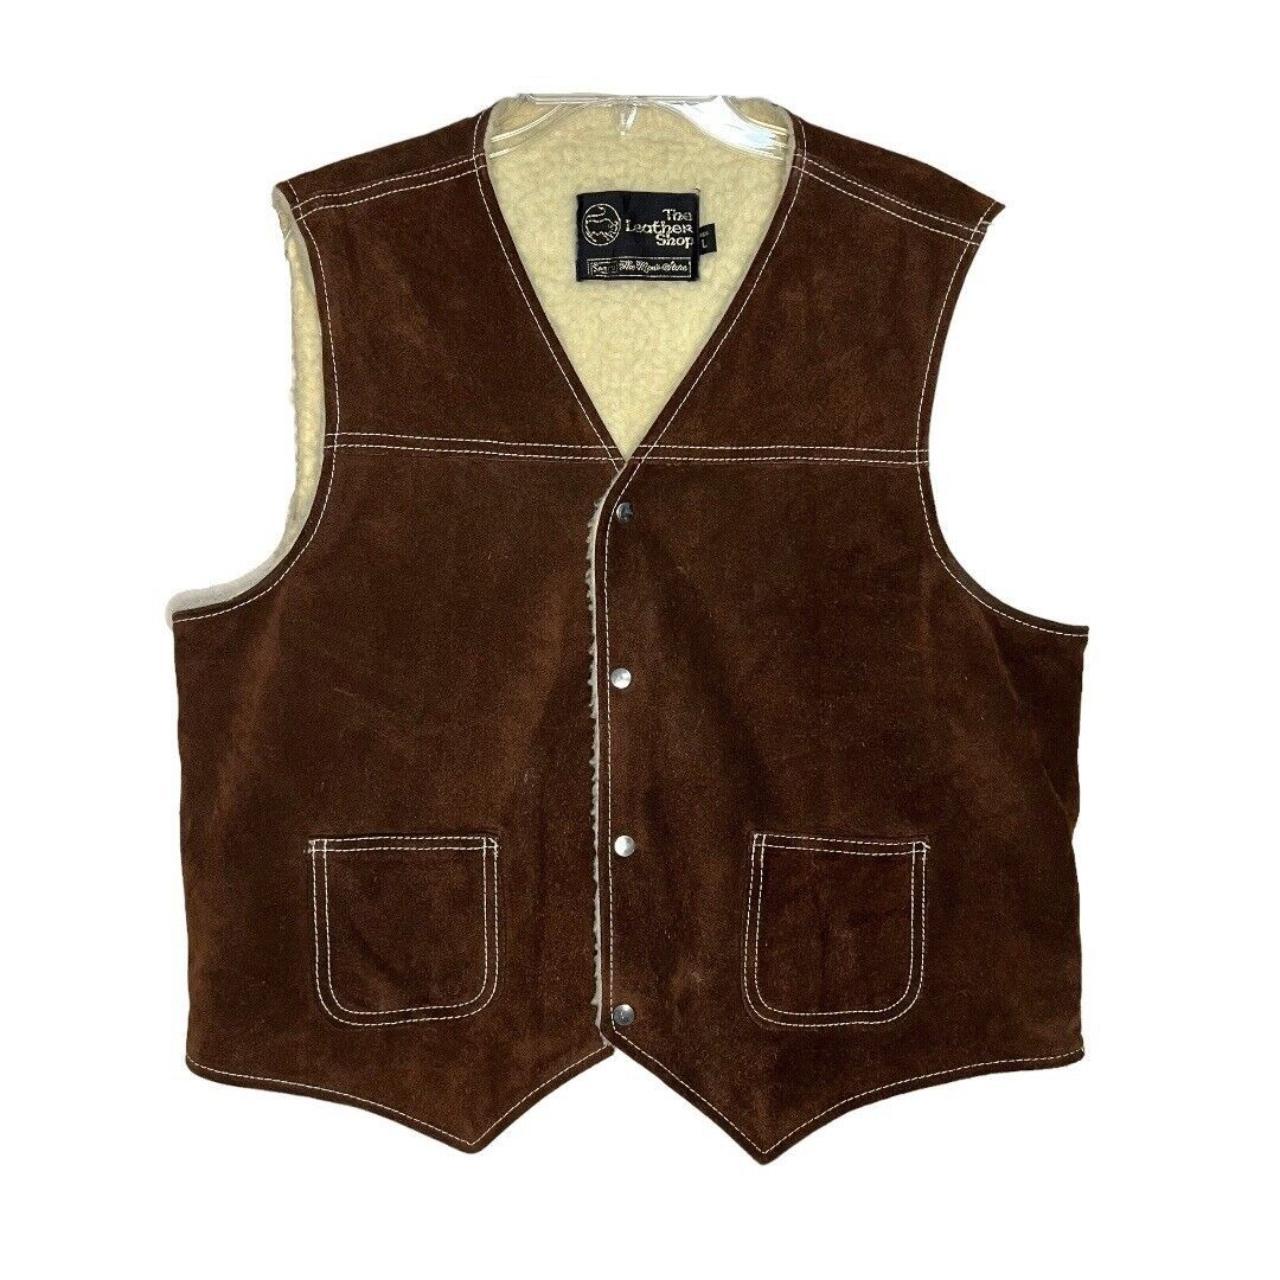 Vintage Sears The Leather Shop Vest Suede Button... - Depop